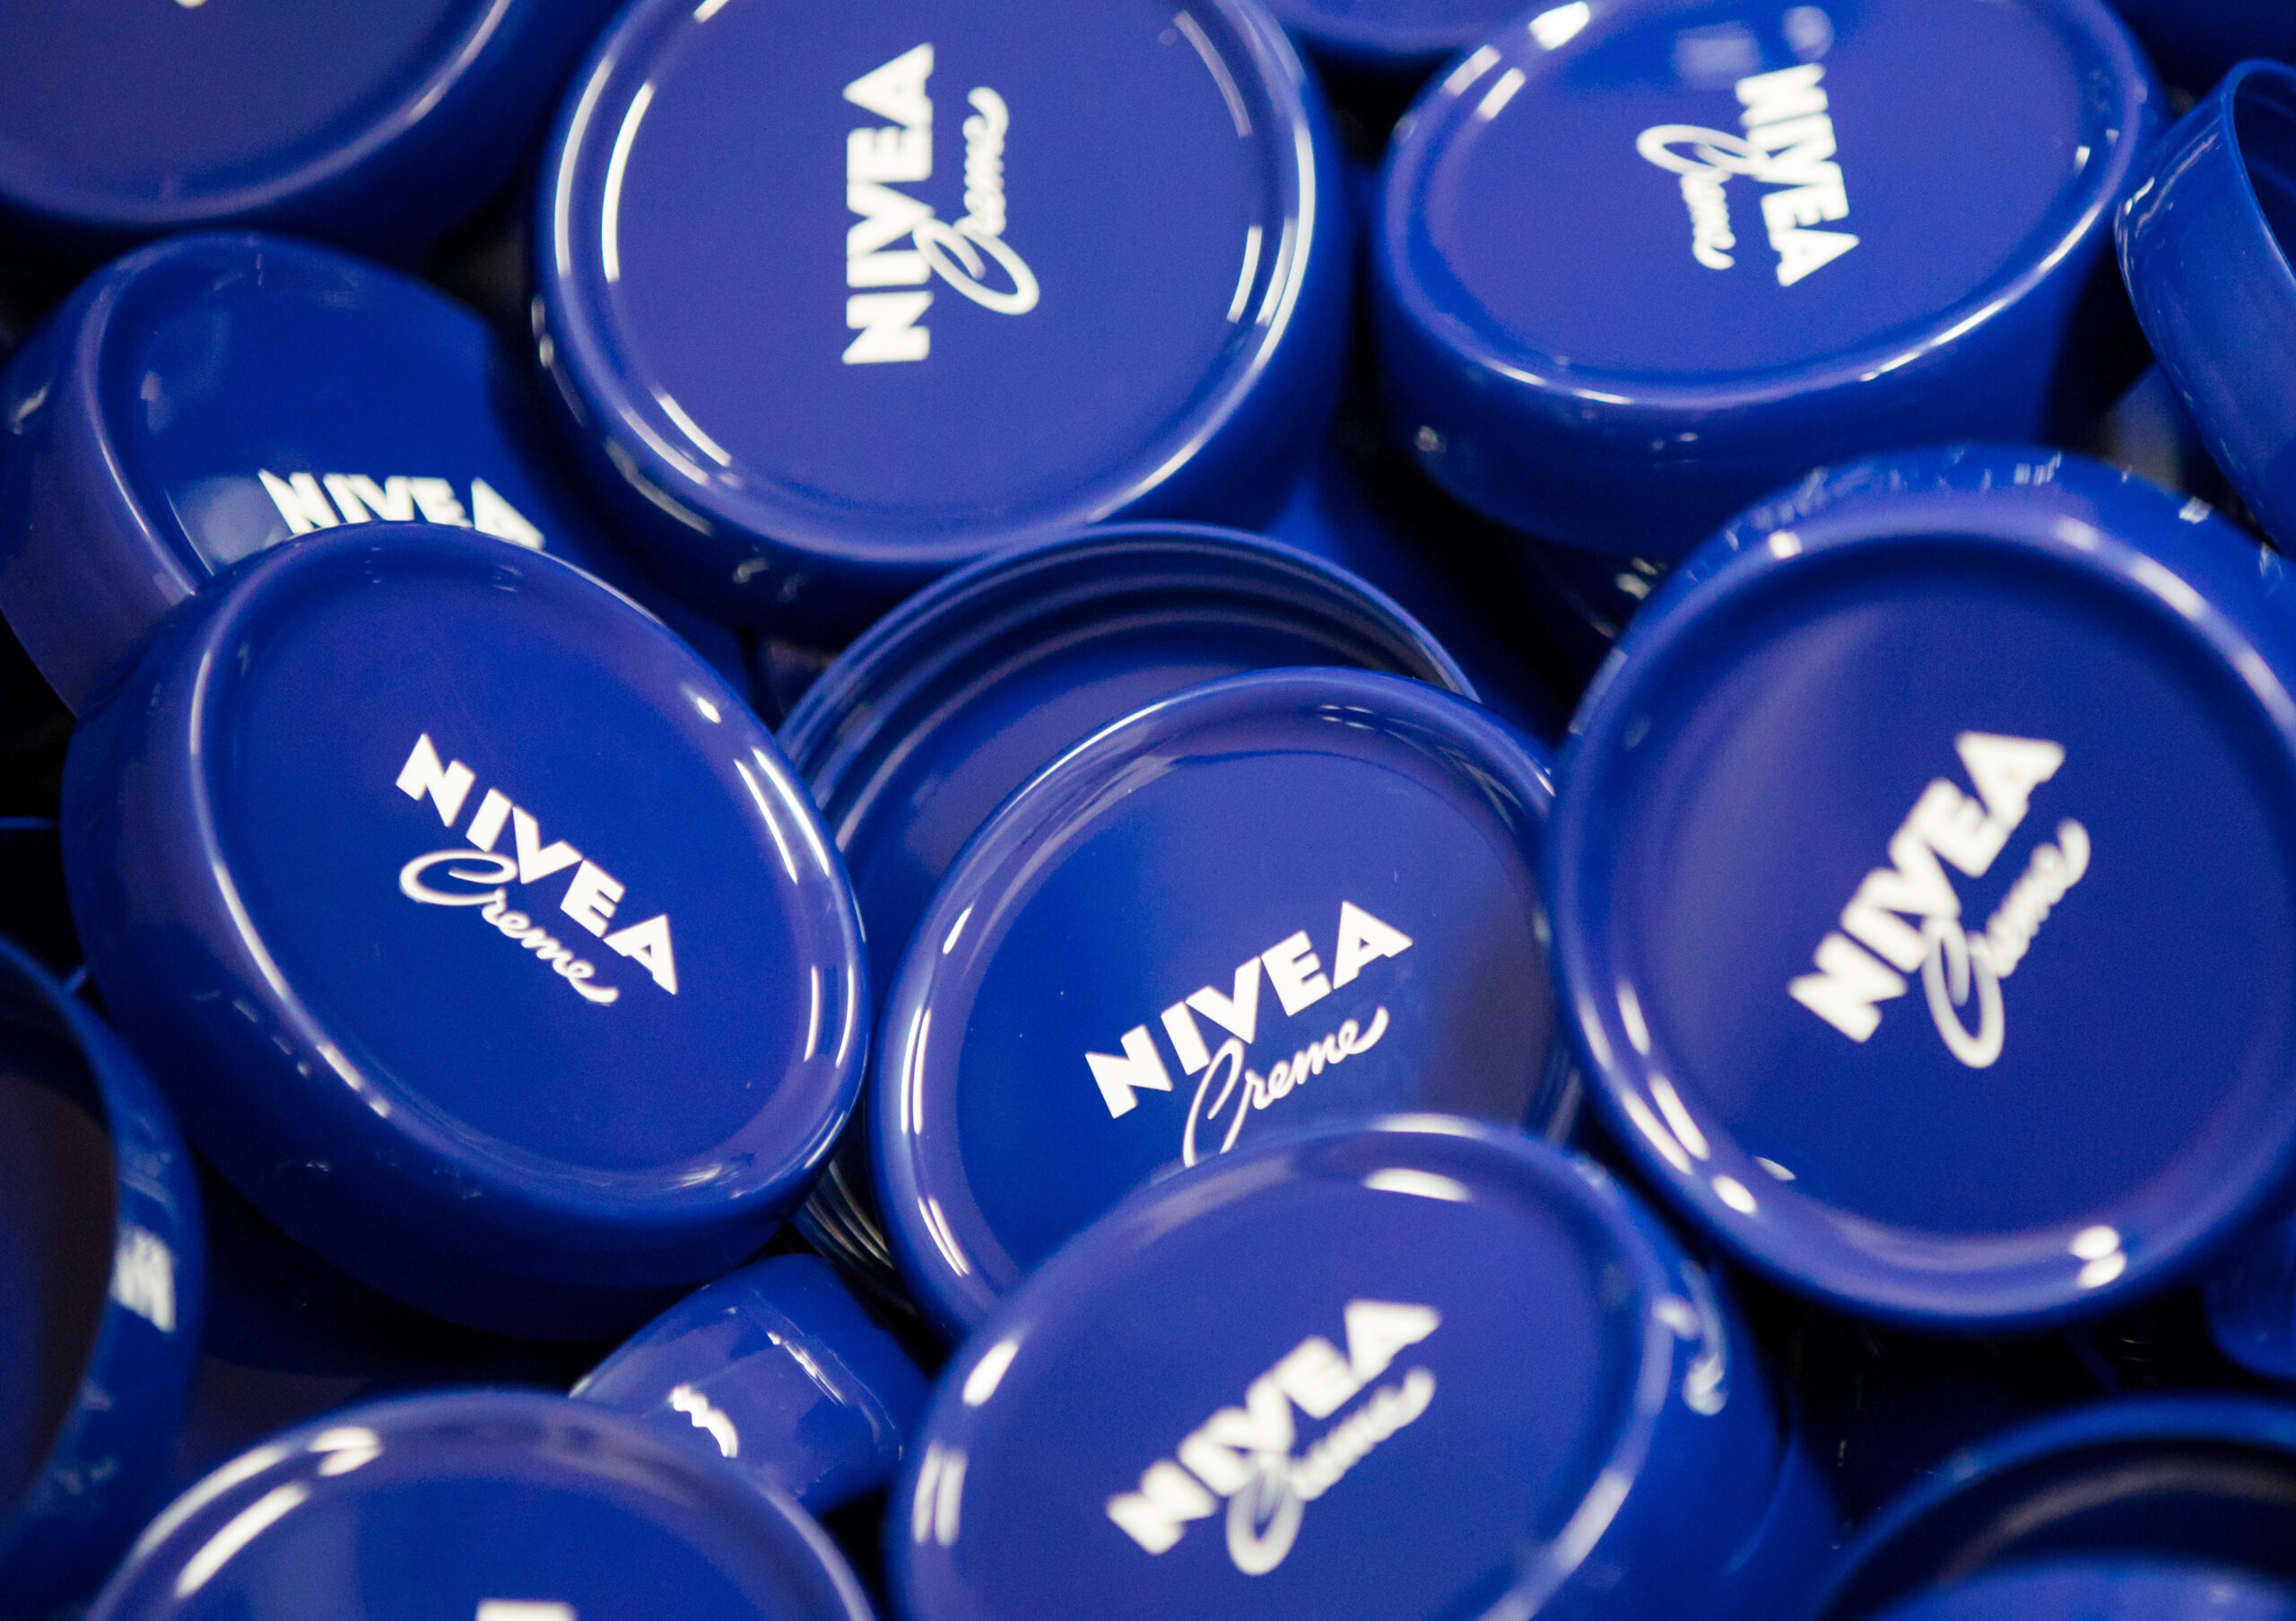 Auch die Marke Nivea gehört zu Beiersdorf. (Symbolbild)